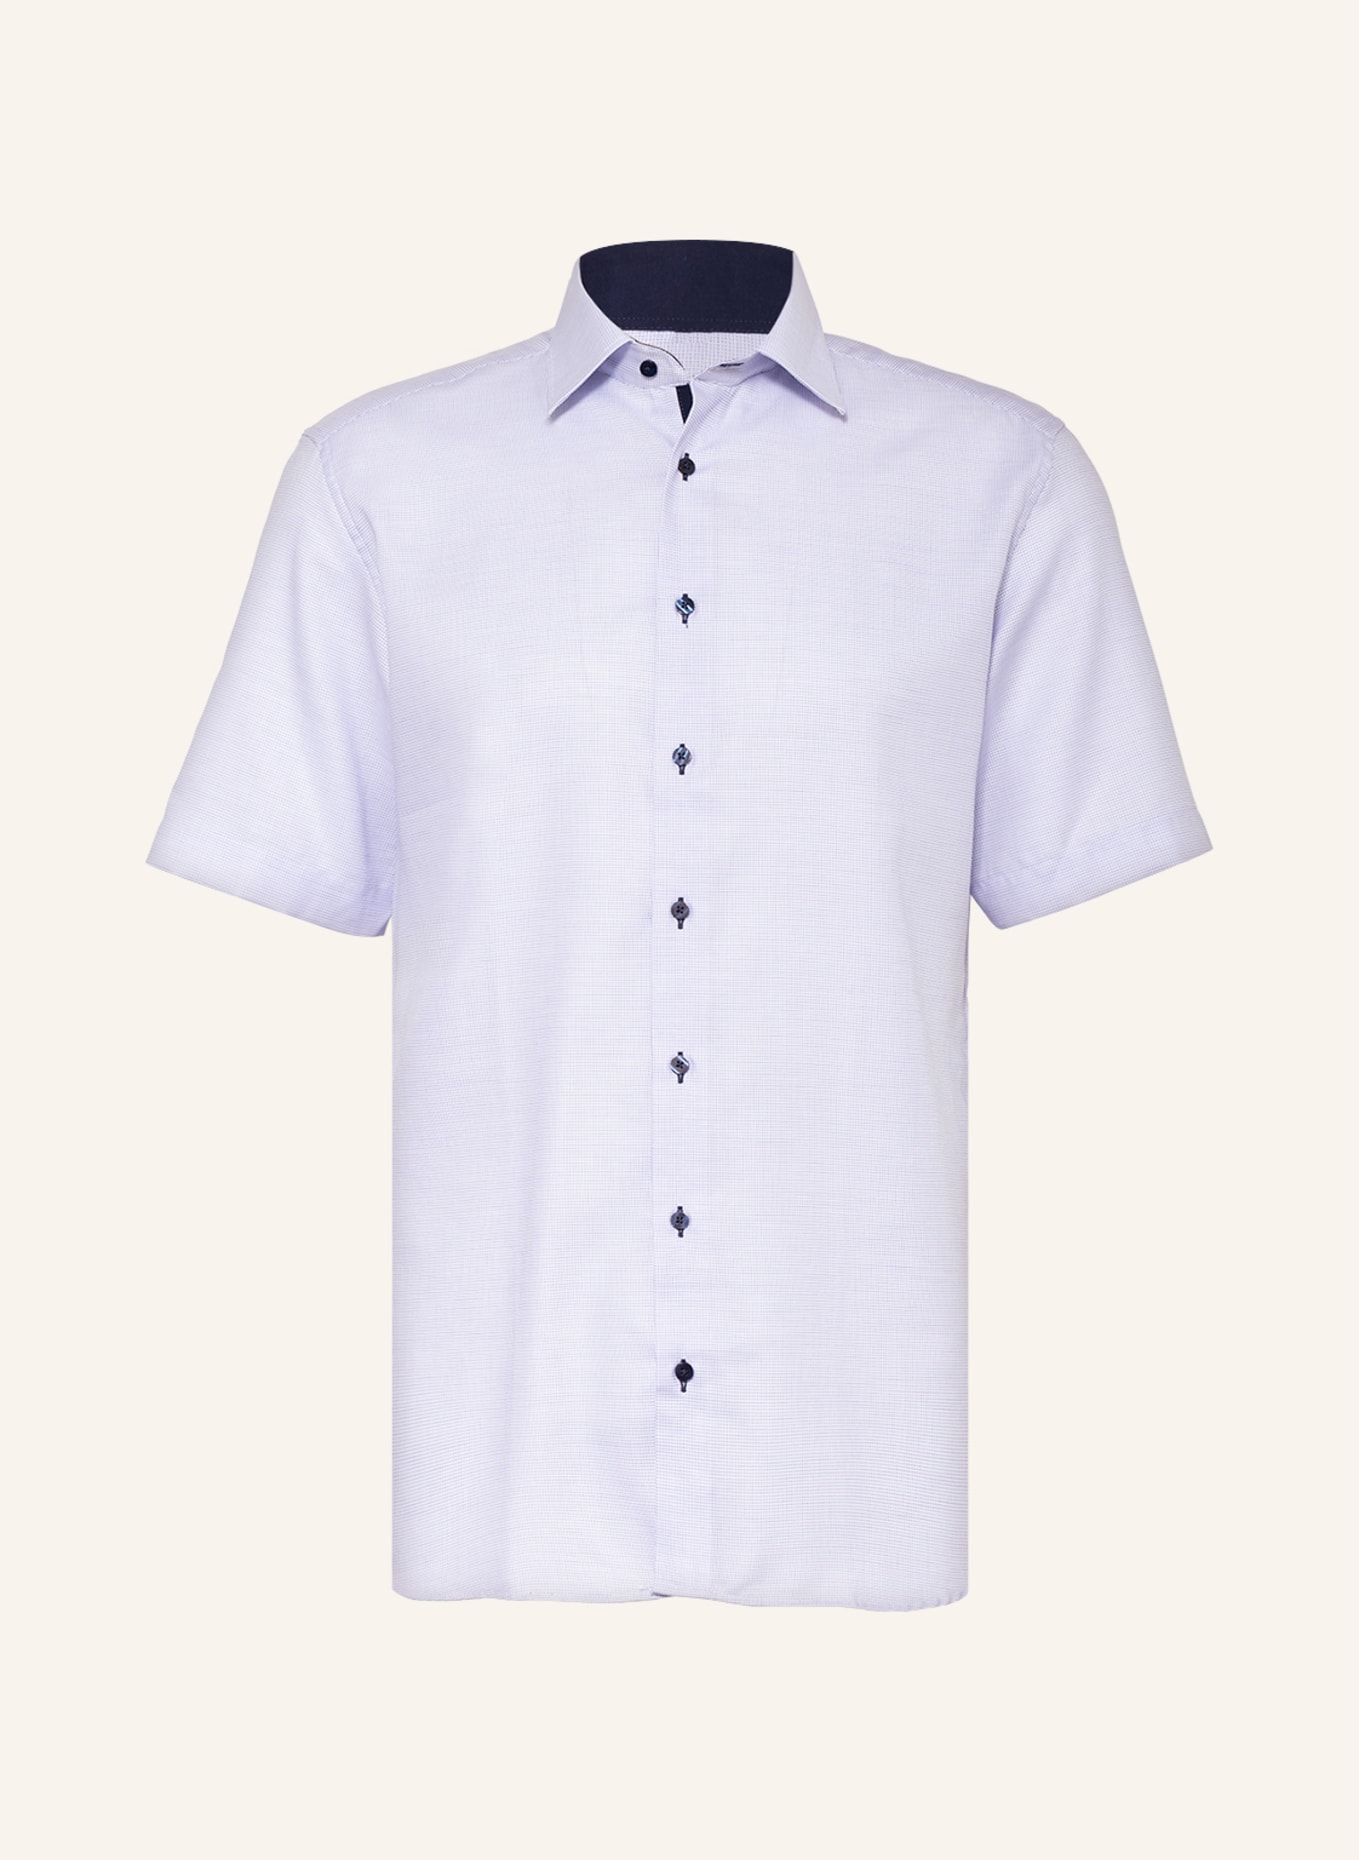 ETERNA Short-sleeved shirt modern fit, Color: LIGHT BLUE (Image 1)